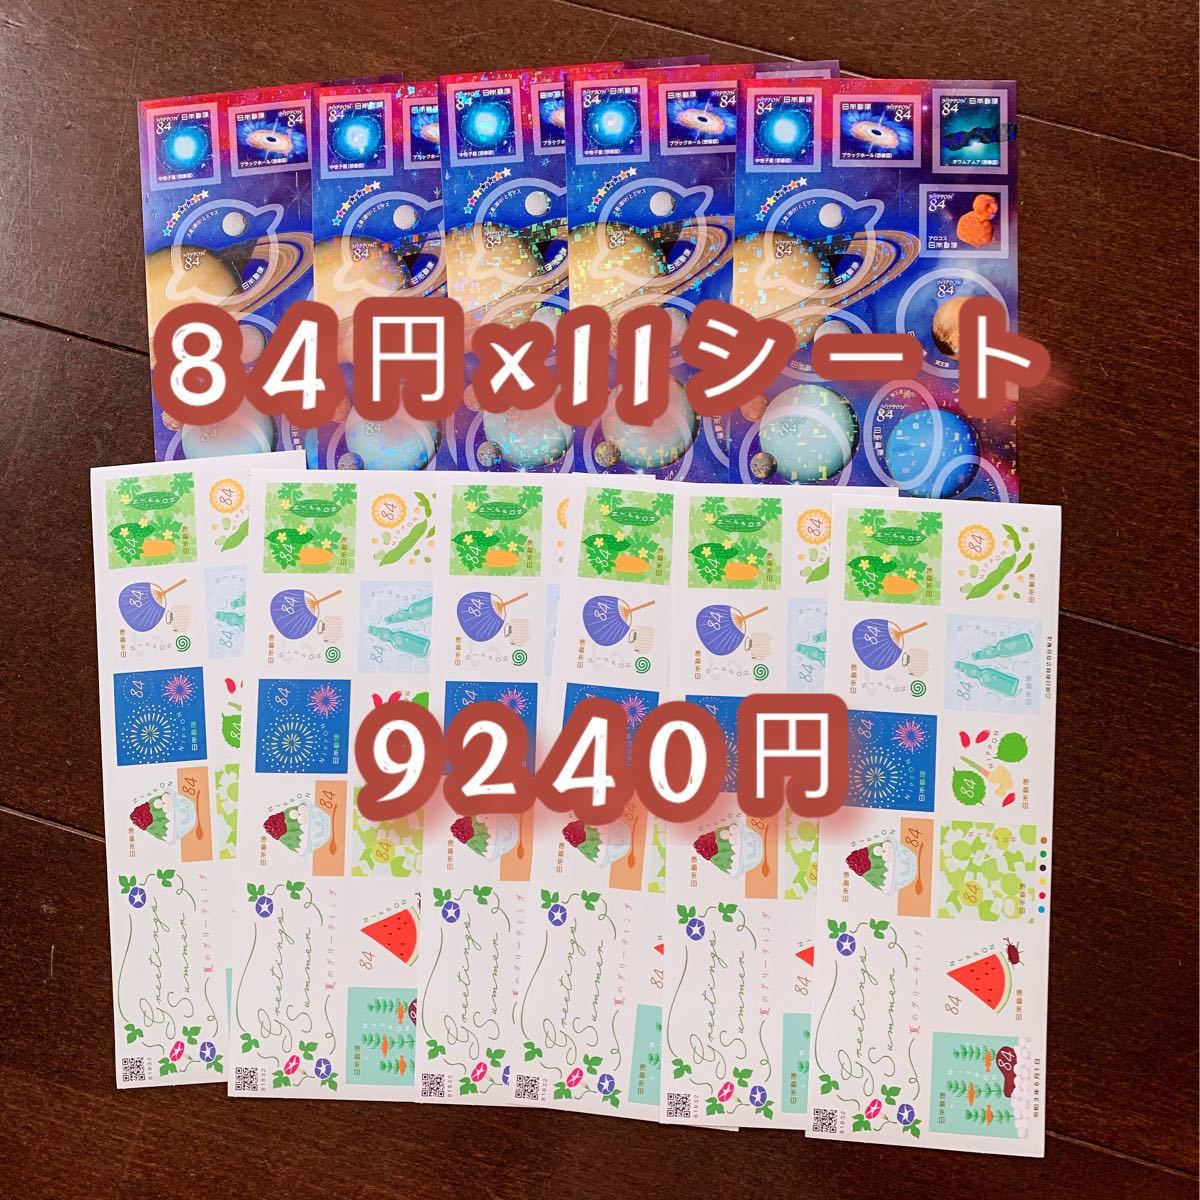 シール切手　11 シール切手が84円×110枚で9240円分です　